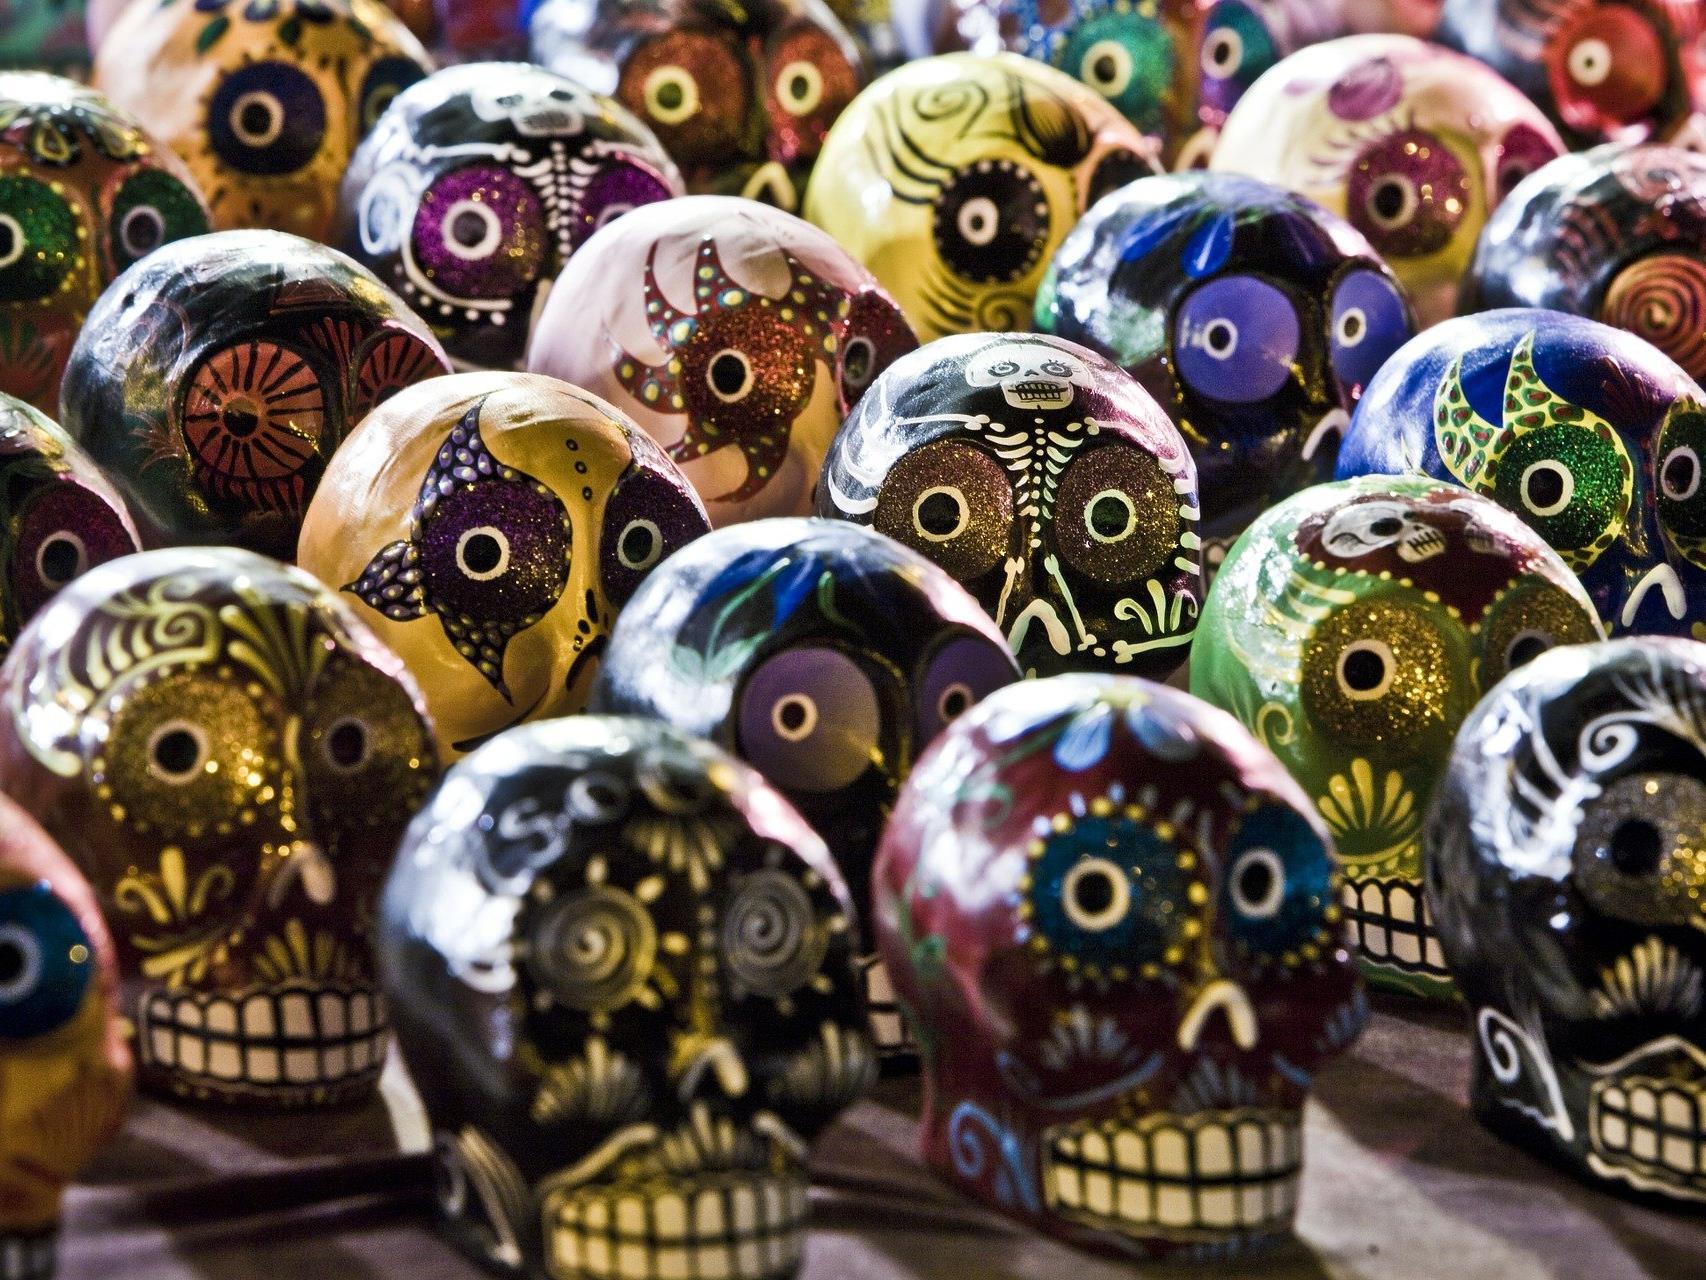 Am 29. Oktober wird das zweite mexikanische Totenfest in Wien gefeiert.